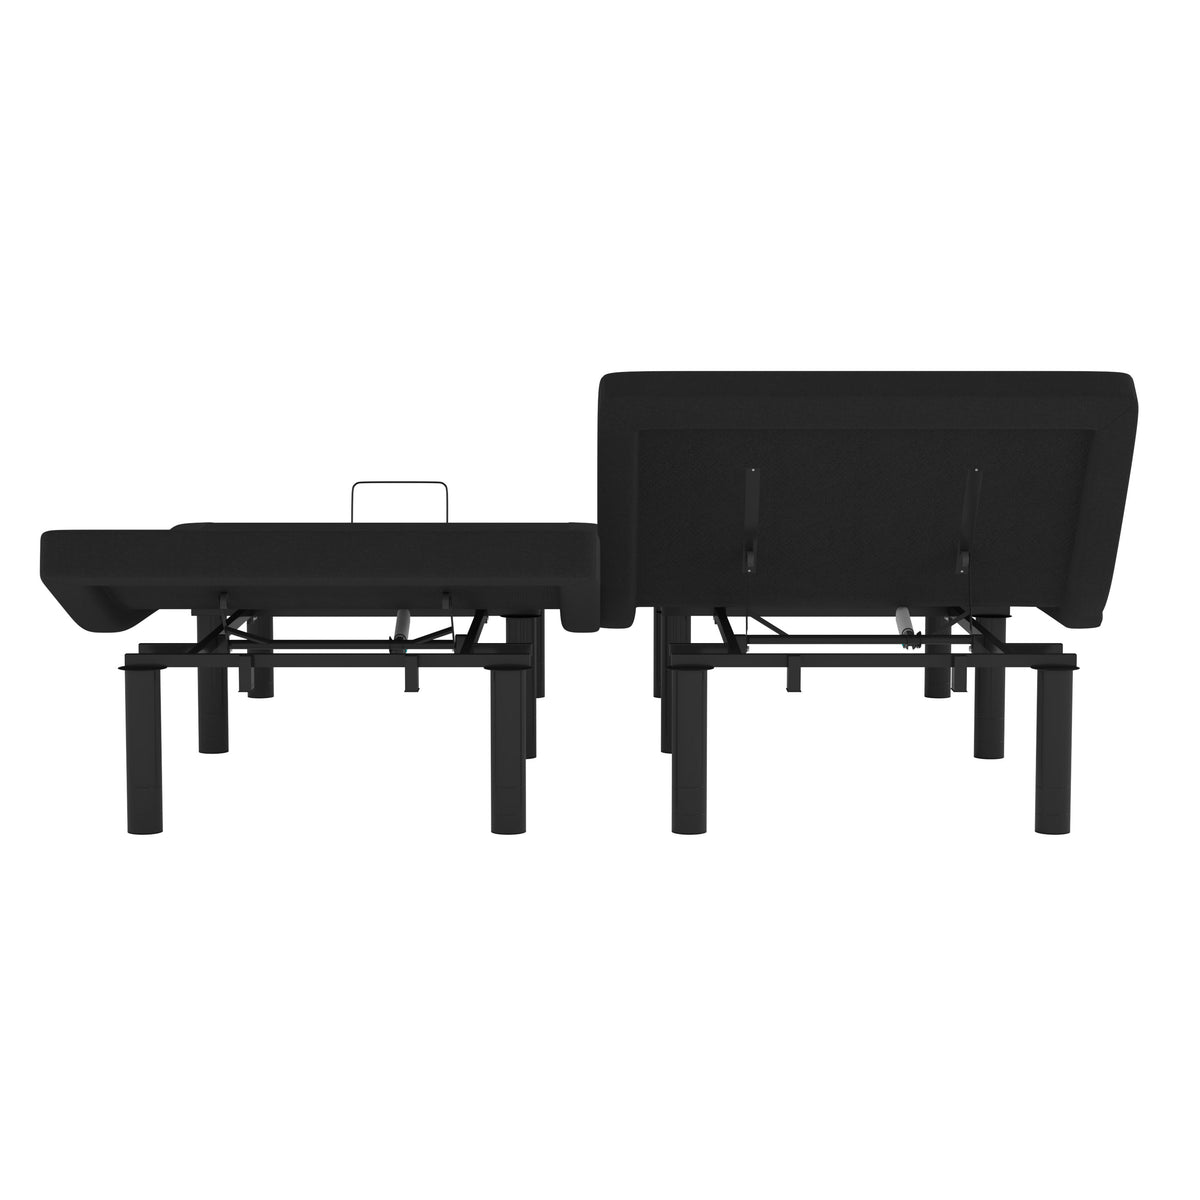 Split King |#| Anti-skid Black Upholstered Adjustable Bed Base with Wireless Remote-Split King